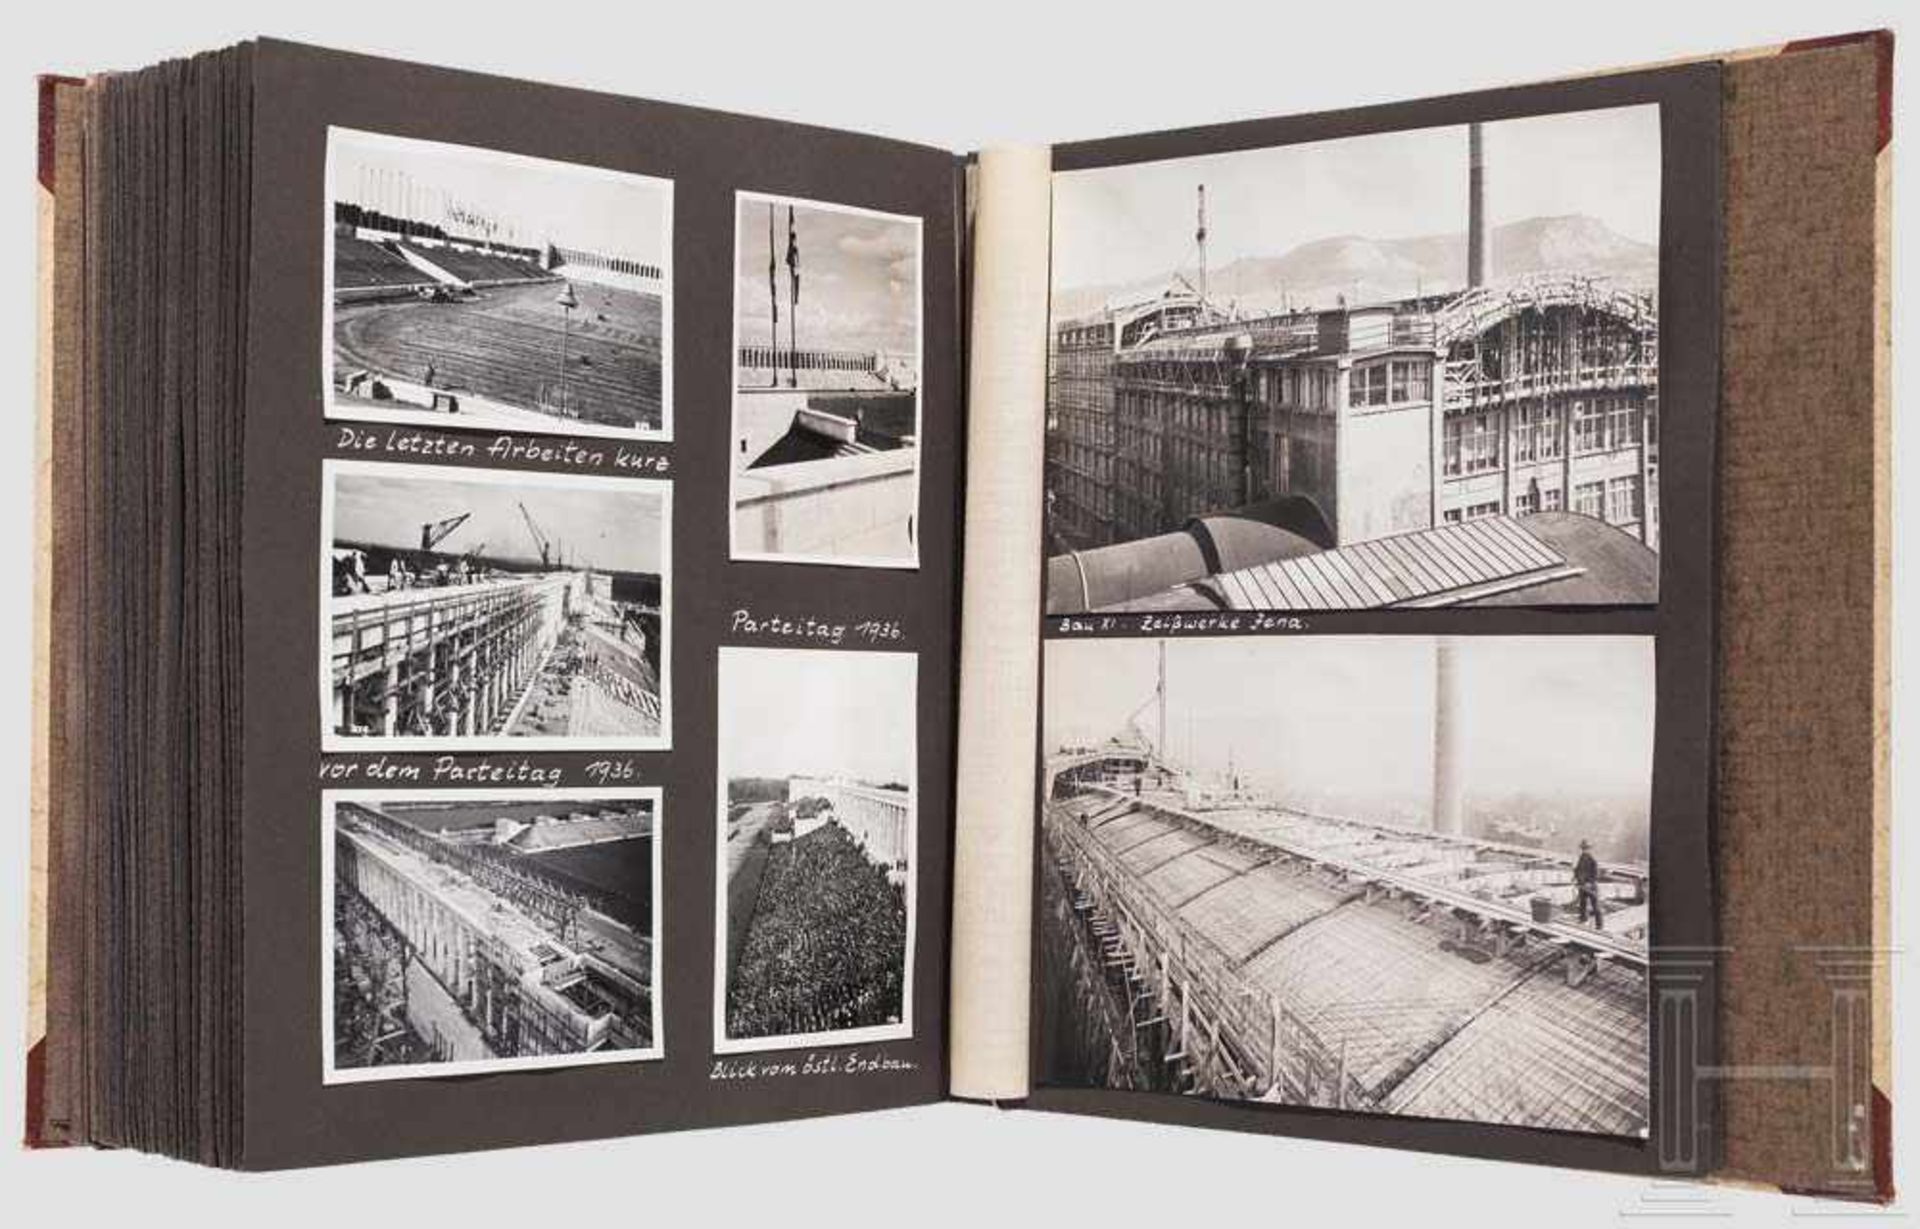 Fotoalbum des Architekten Adolf Emilius, Nürnberg 30er, 40er und 50er Jahre, Architekturaufnahmen - Bild 3 aus 3